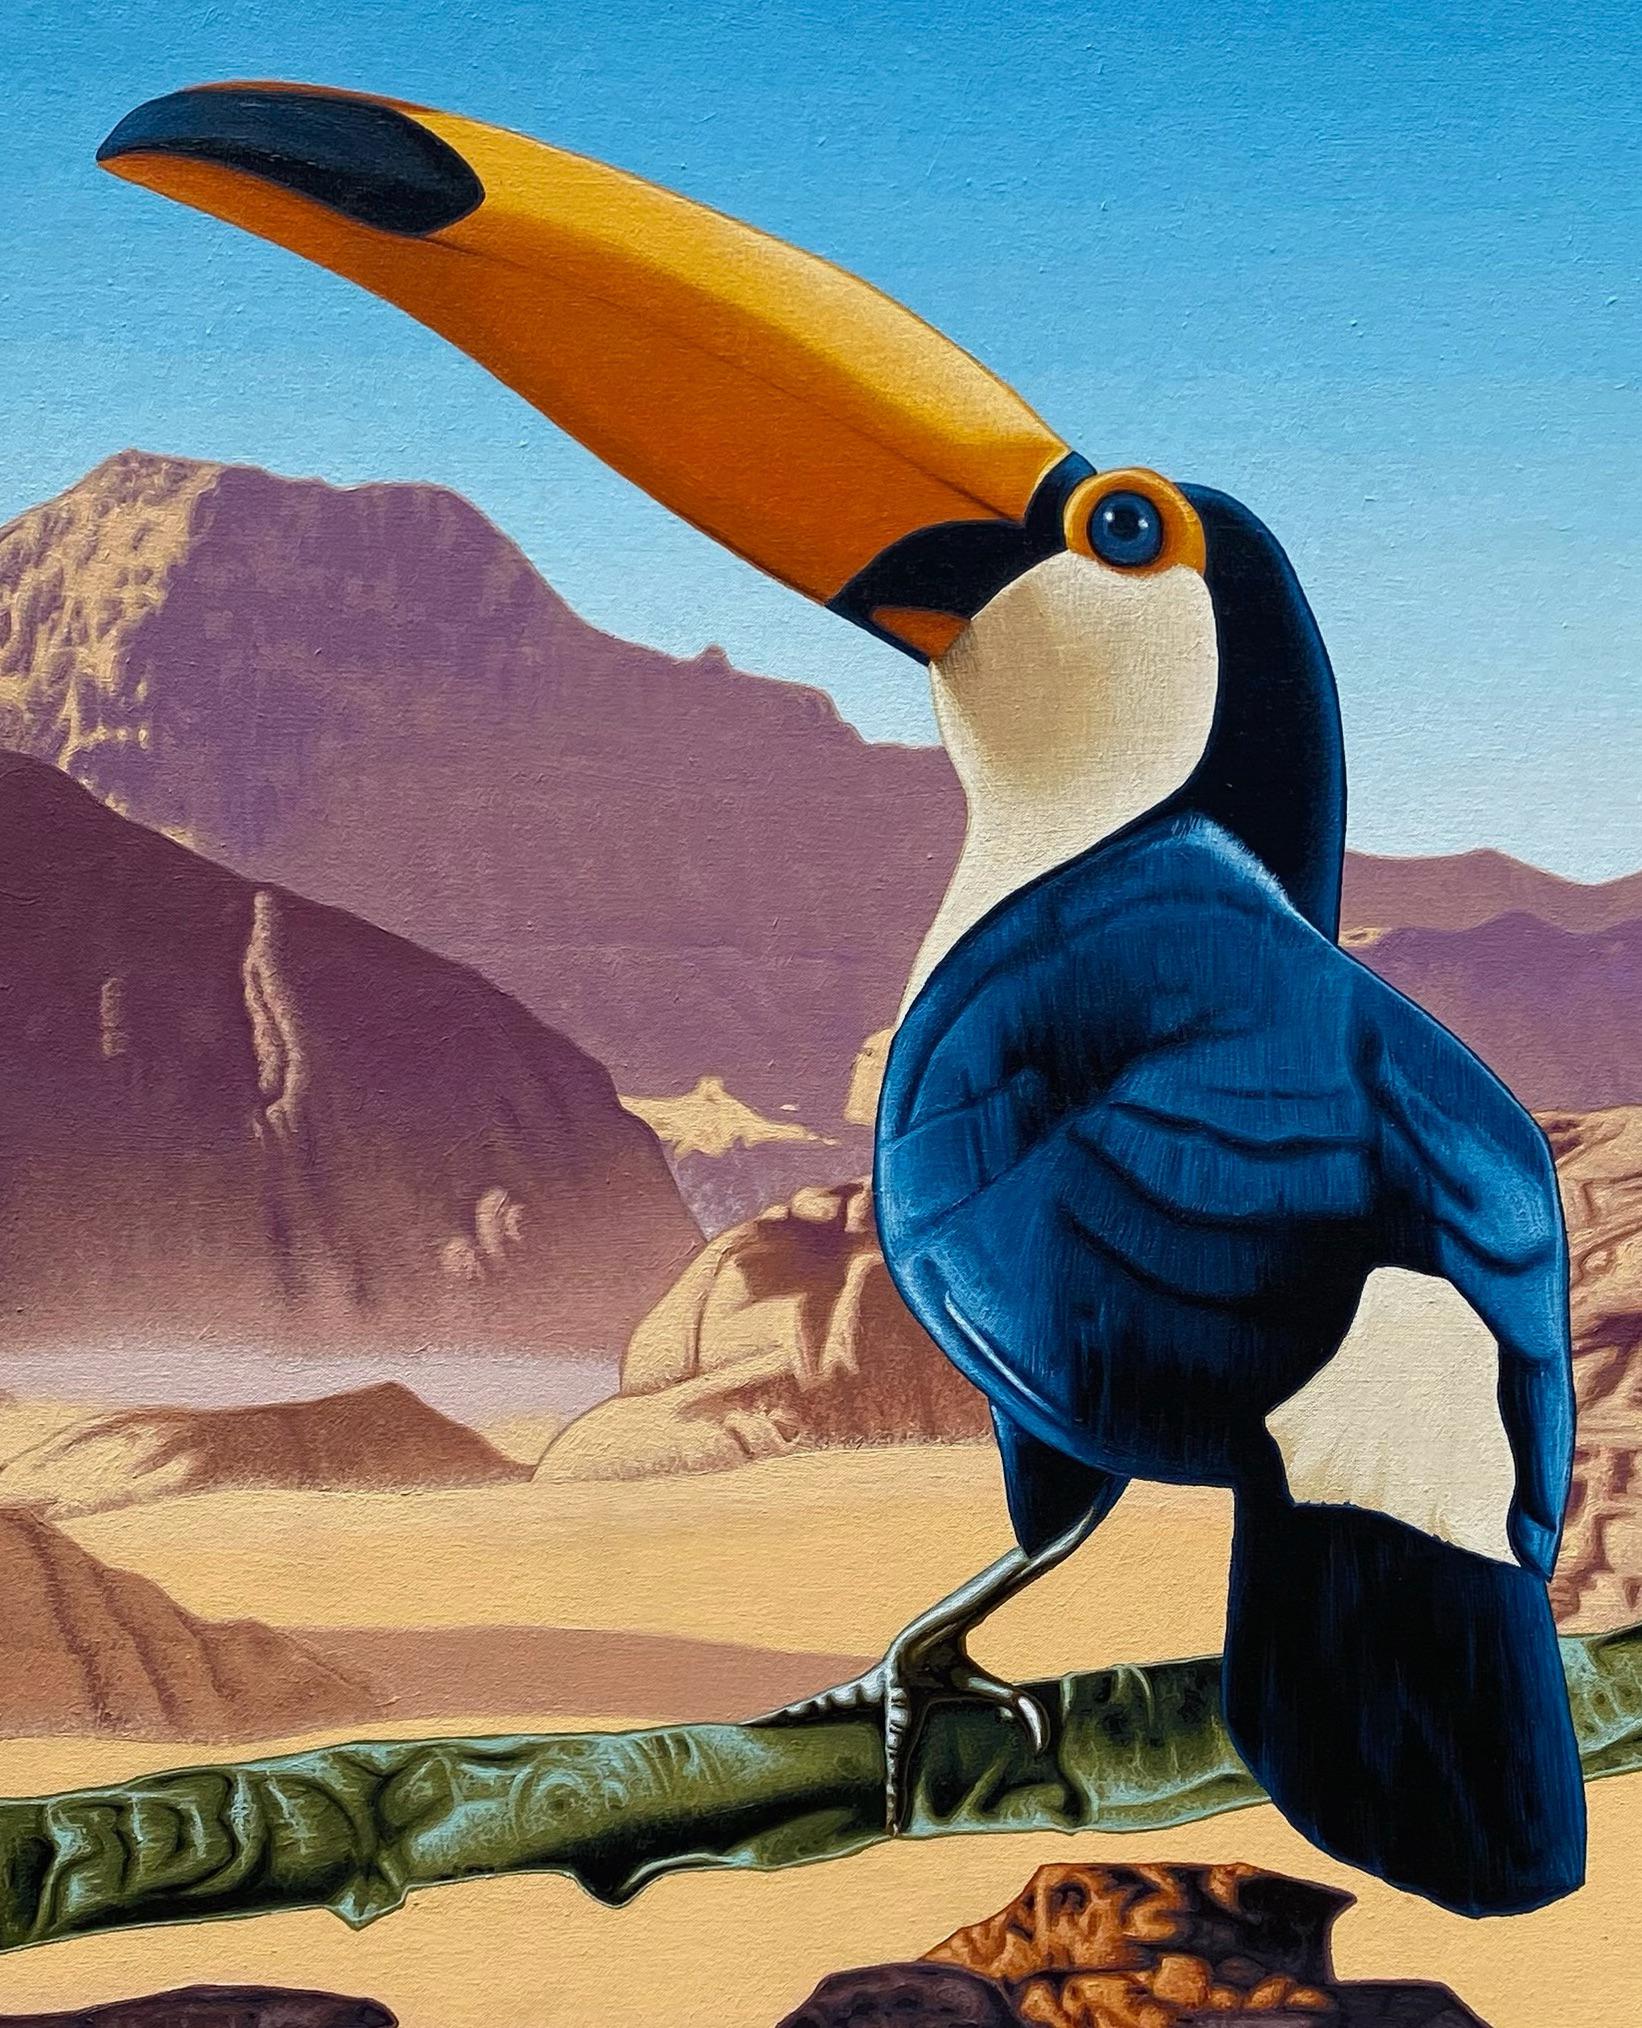 Toucan in der Wüste: No Mirage  – Painting von Stephen Hall